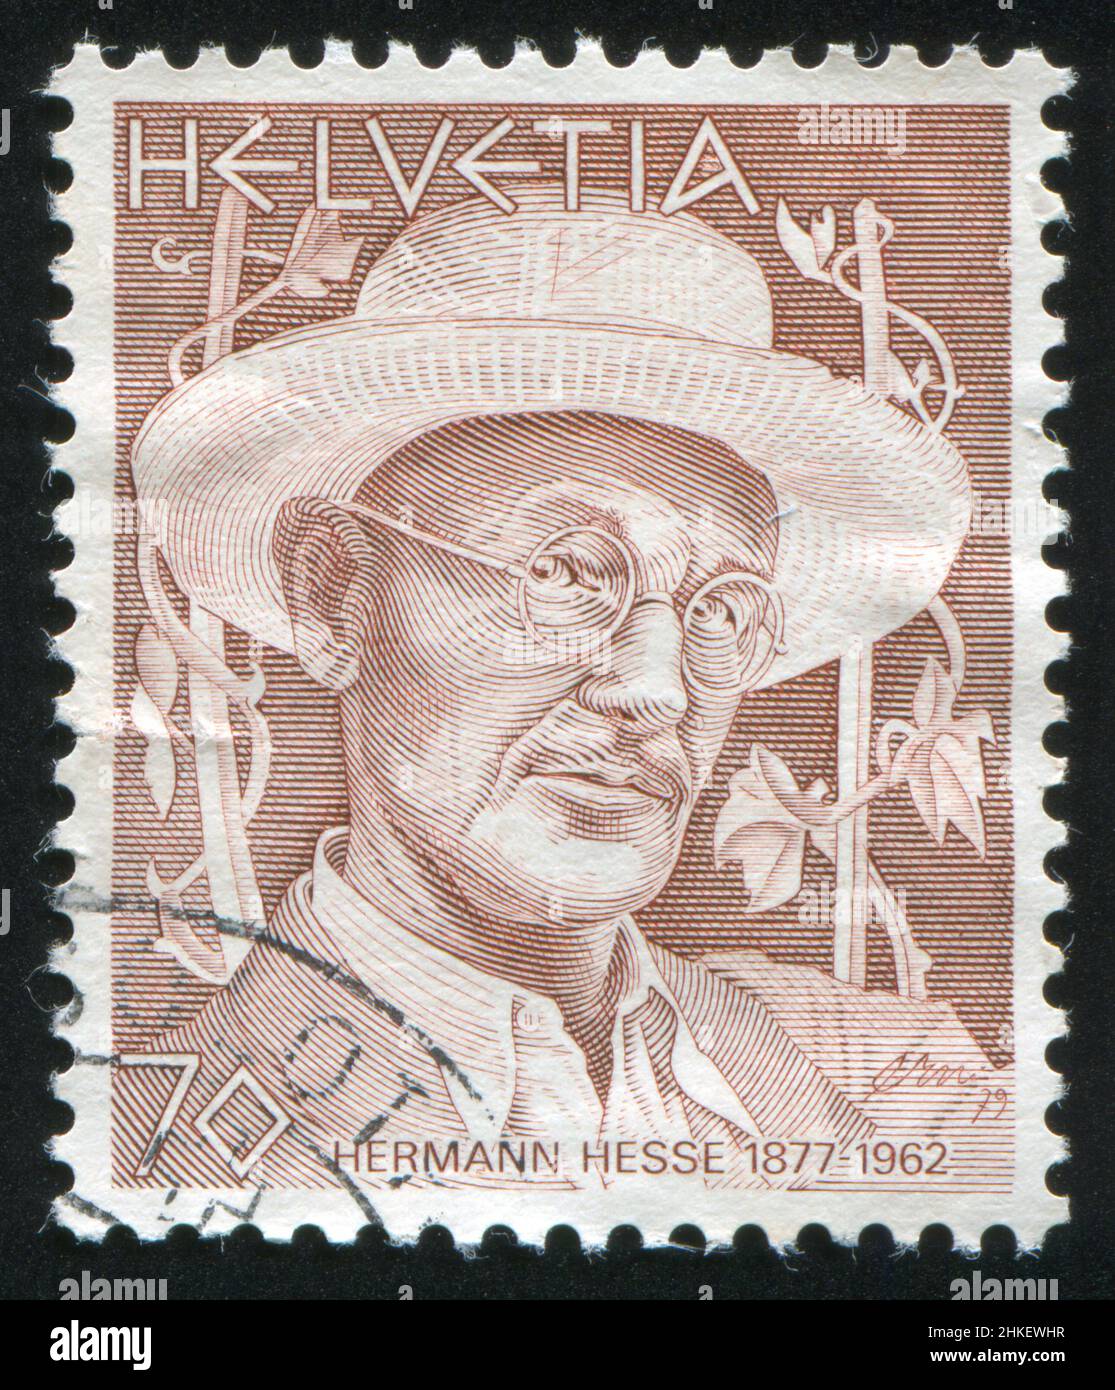 SWITZERLAND - CIRCA 1978: stamp printed by Switzerland, shows Hermann Hesse, circa 1978 Stock Photo